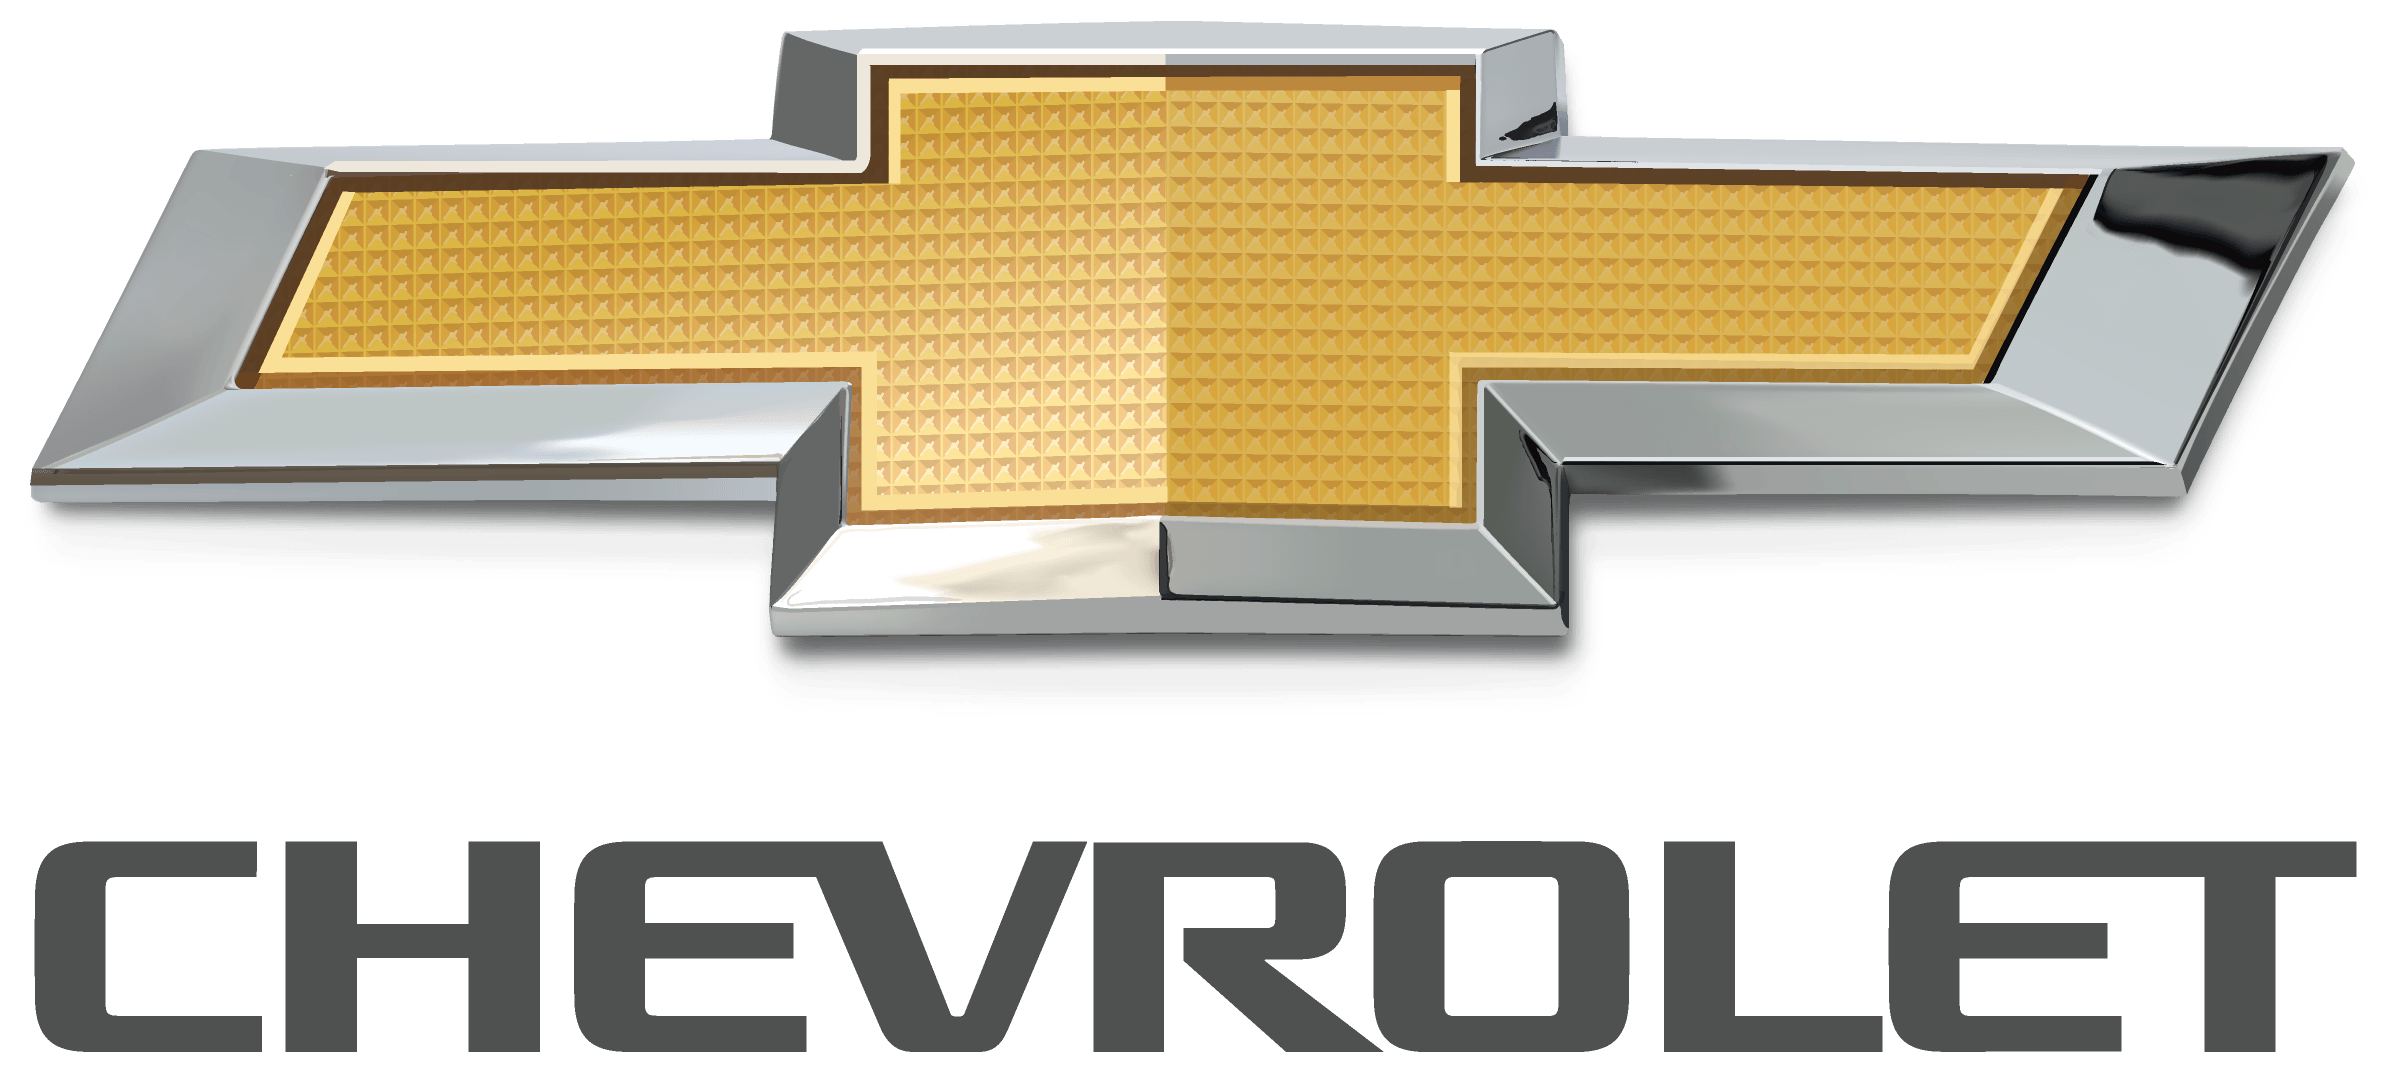 Chevrolet Logo - Chevy